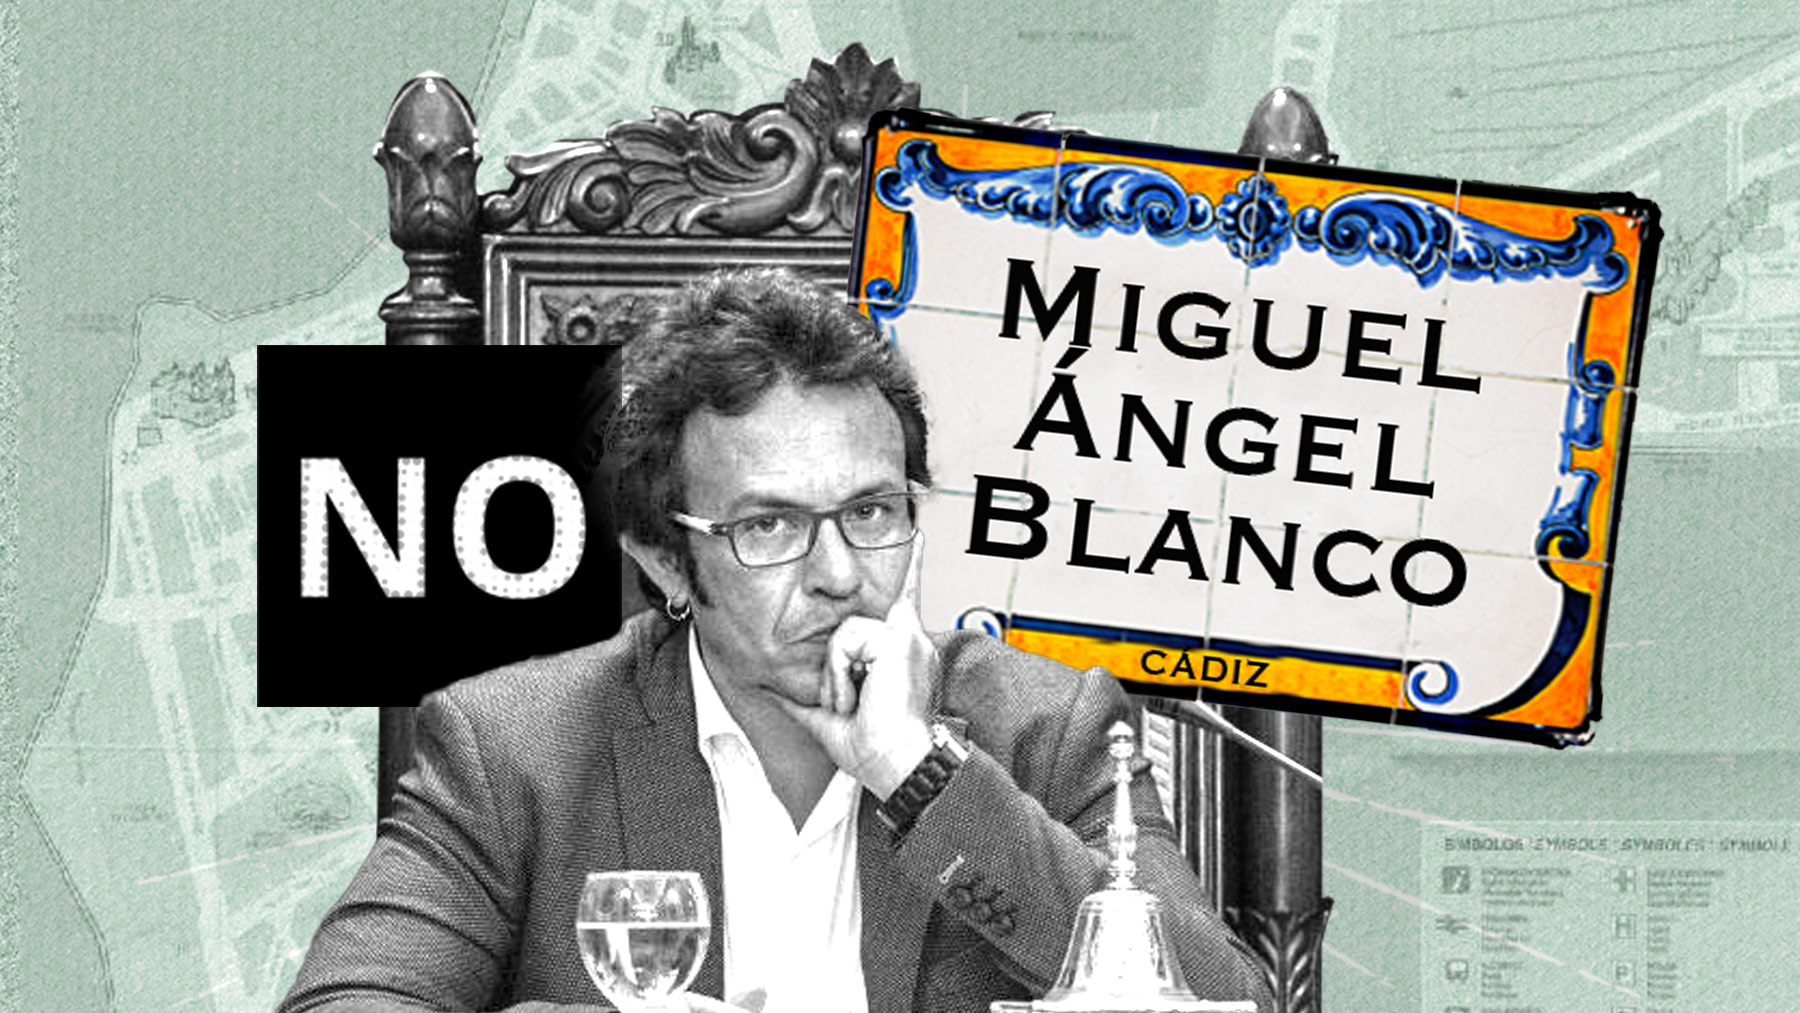 Kichi se niega a poner una calle a Miguel Ángel Blanco en Cádiz pese a estar aprobado